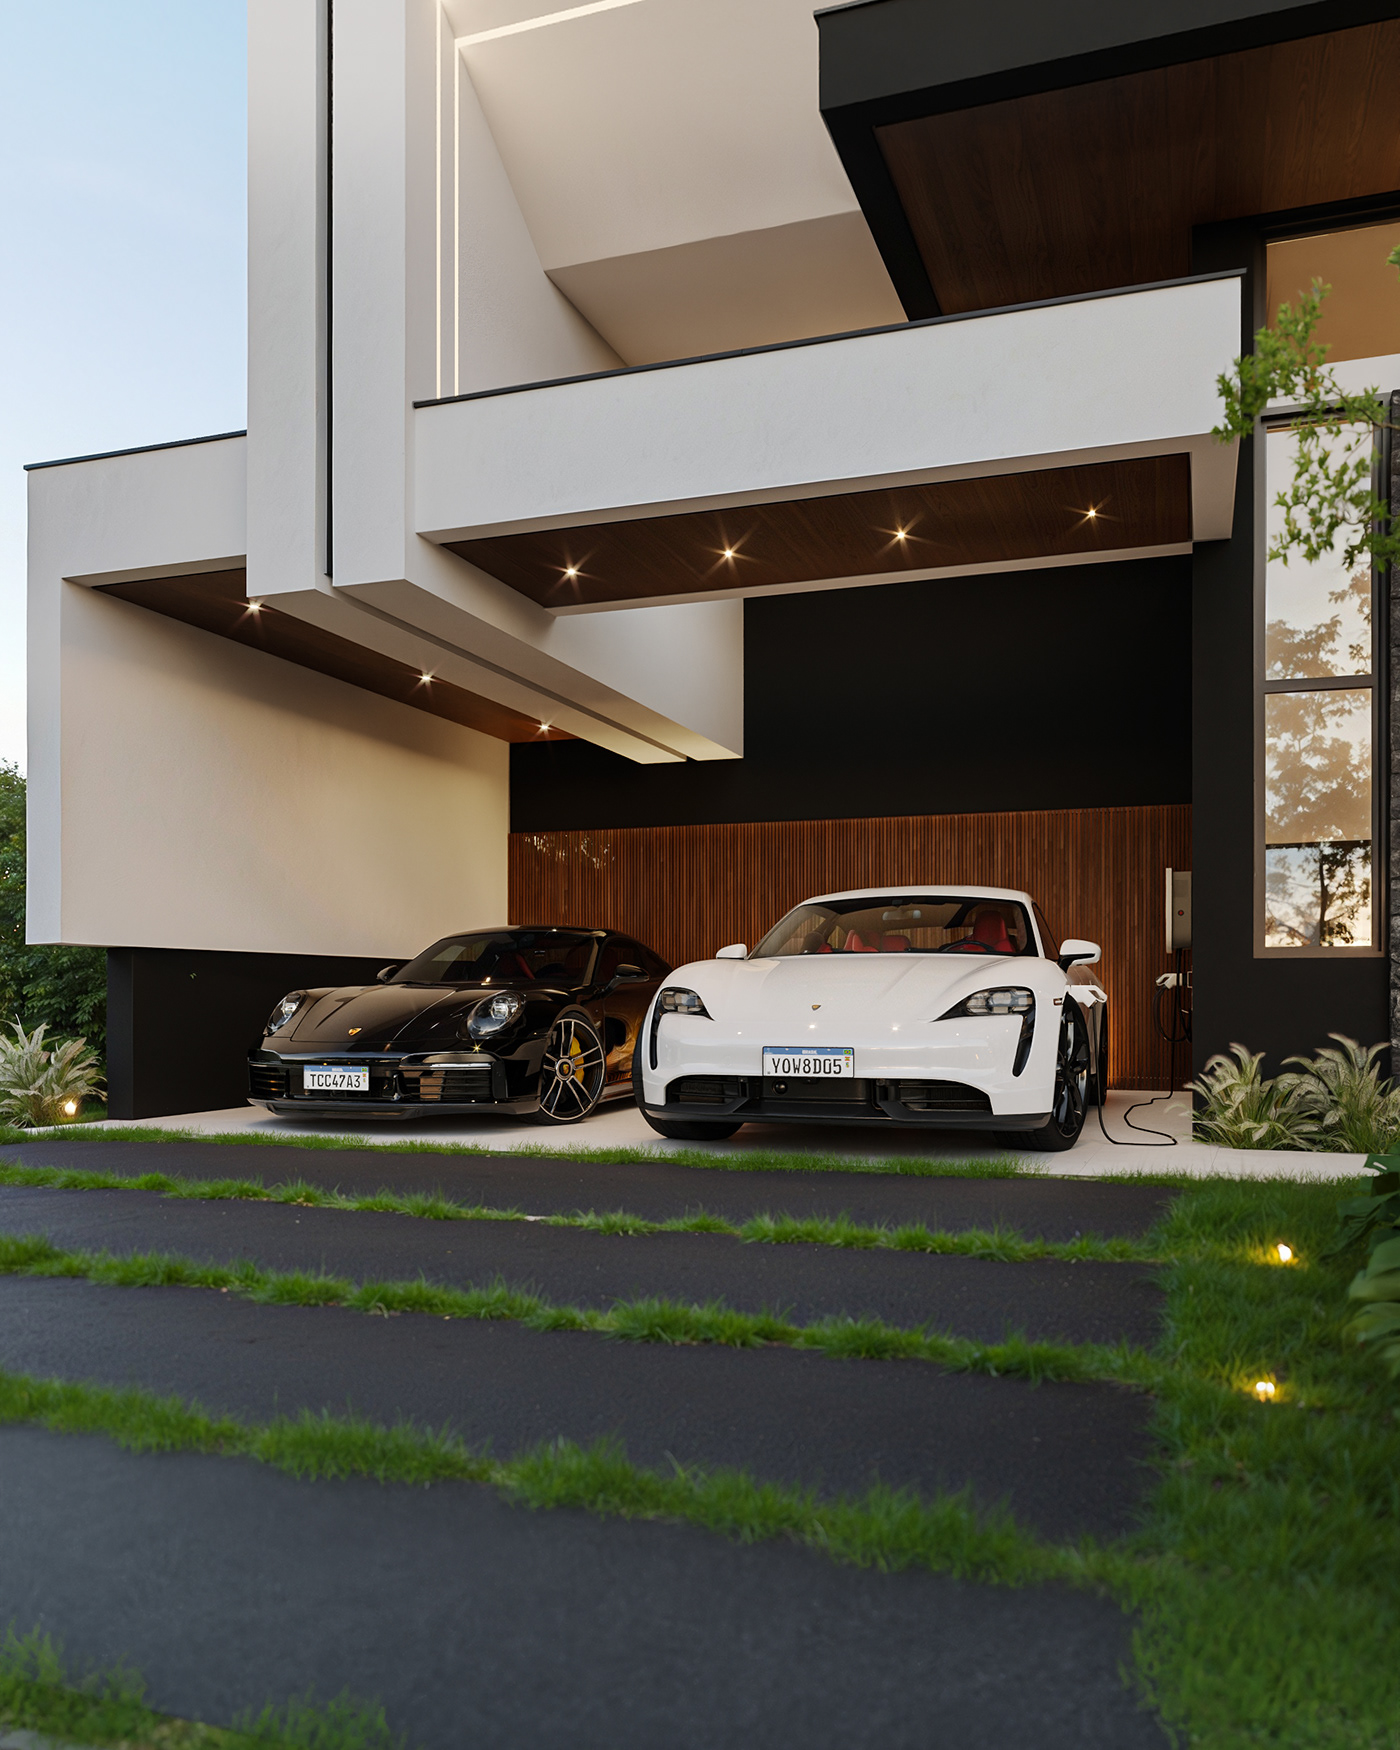 3ds max architecture Render visualization interior design  modern exterior 3D archviz CGI